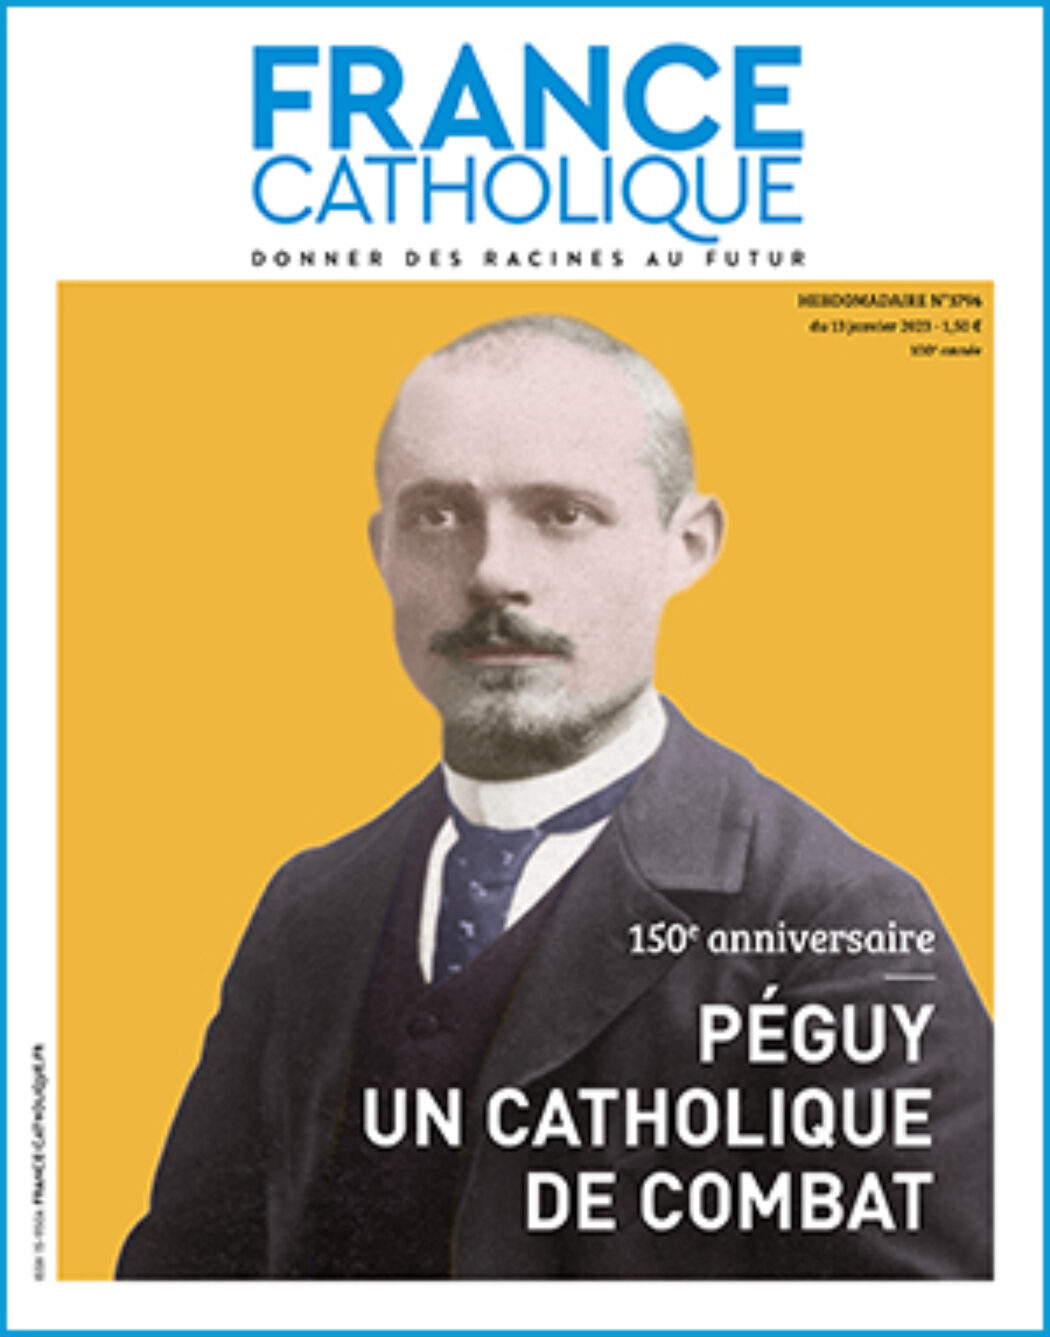 Péguy reprochait à certains catholiques de vouloir pactiser avec le monde moderne